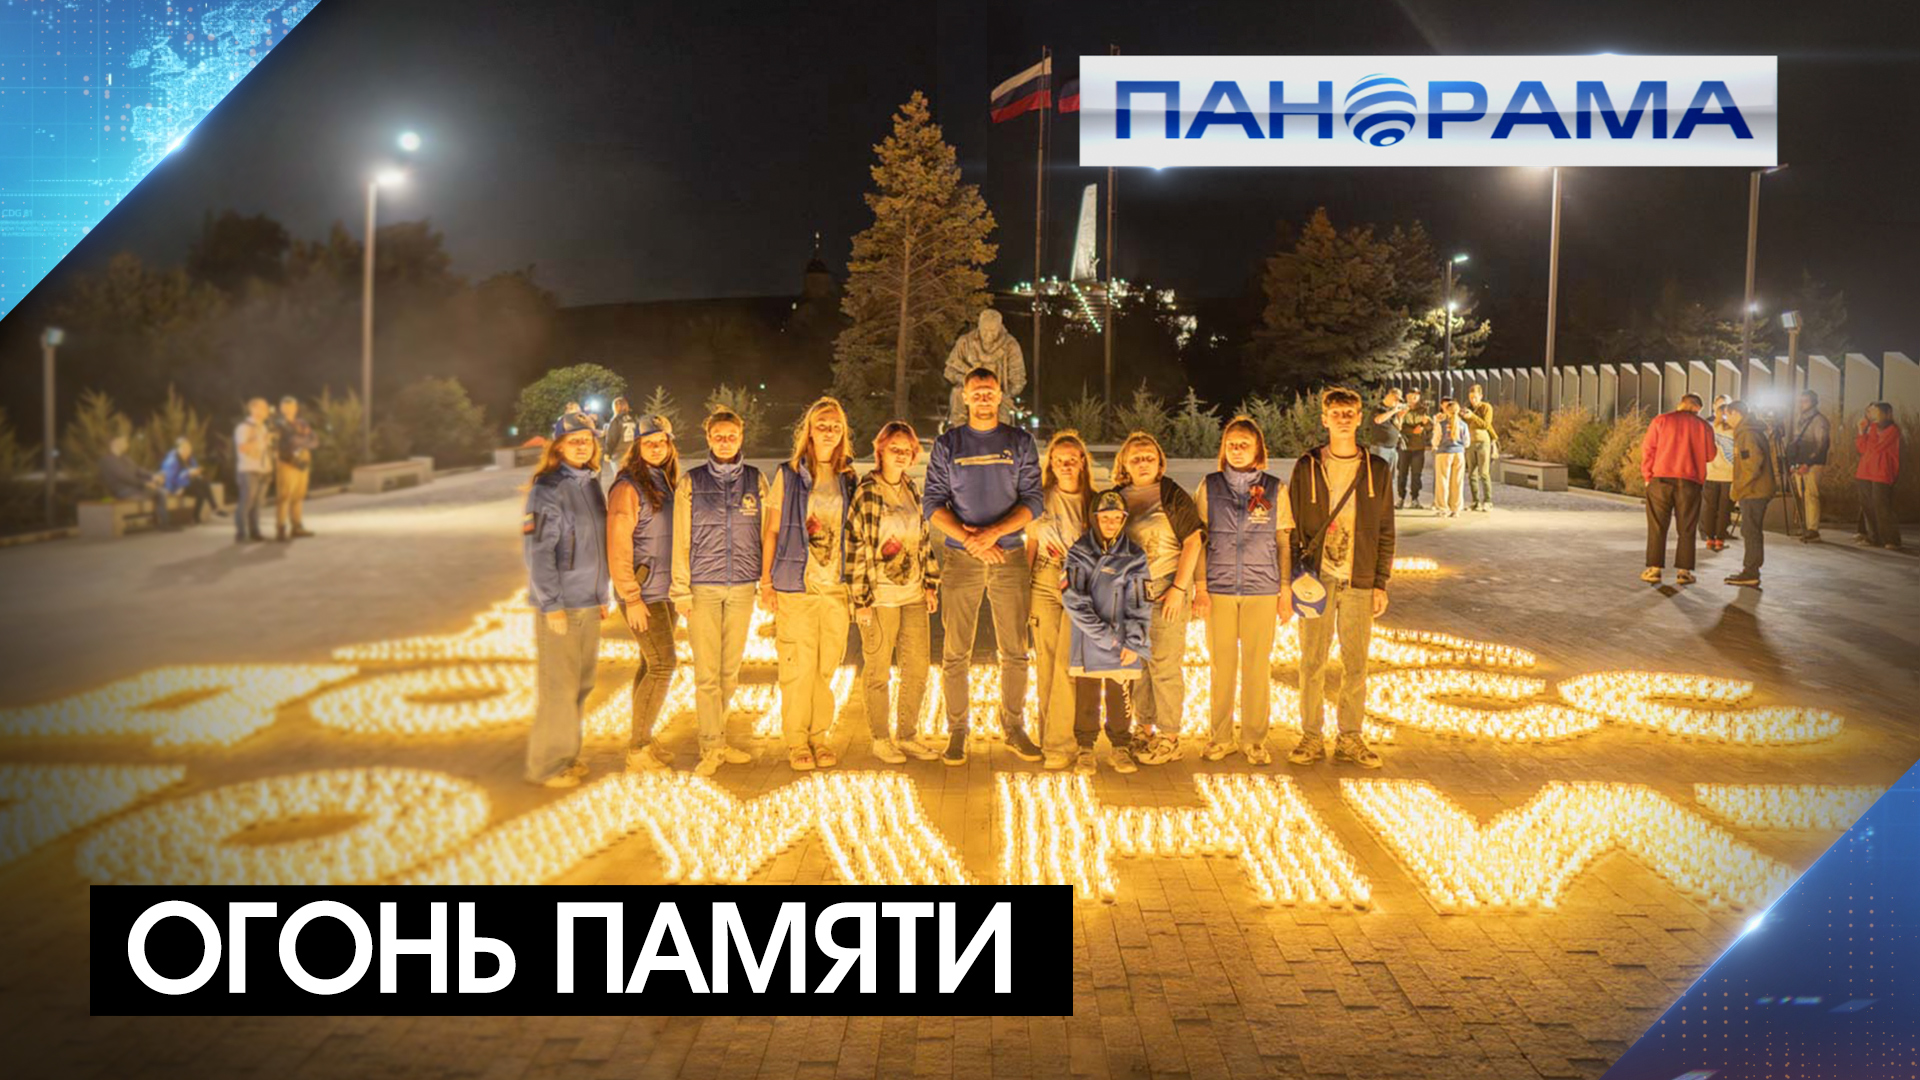 Символ Донбасса из 8 тысяч свечей! Курган Саур-Могила озарился светом лампад в День памяти и скорби